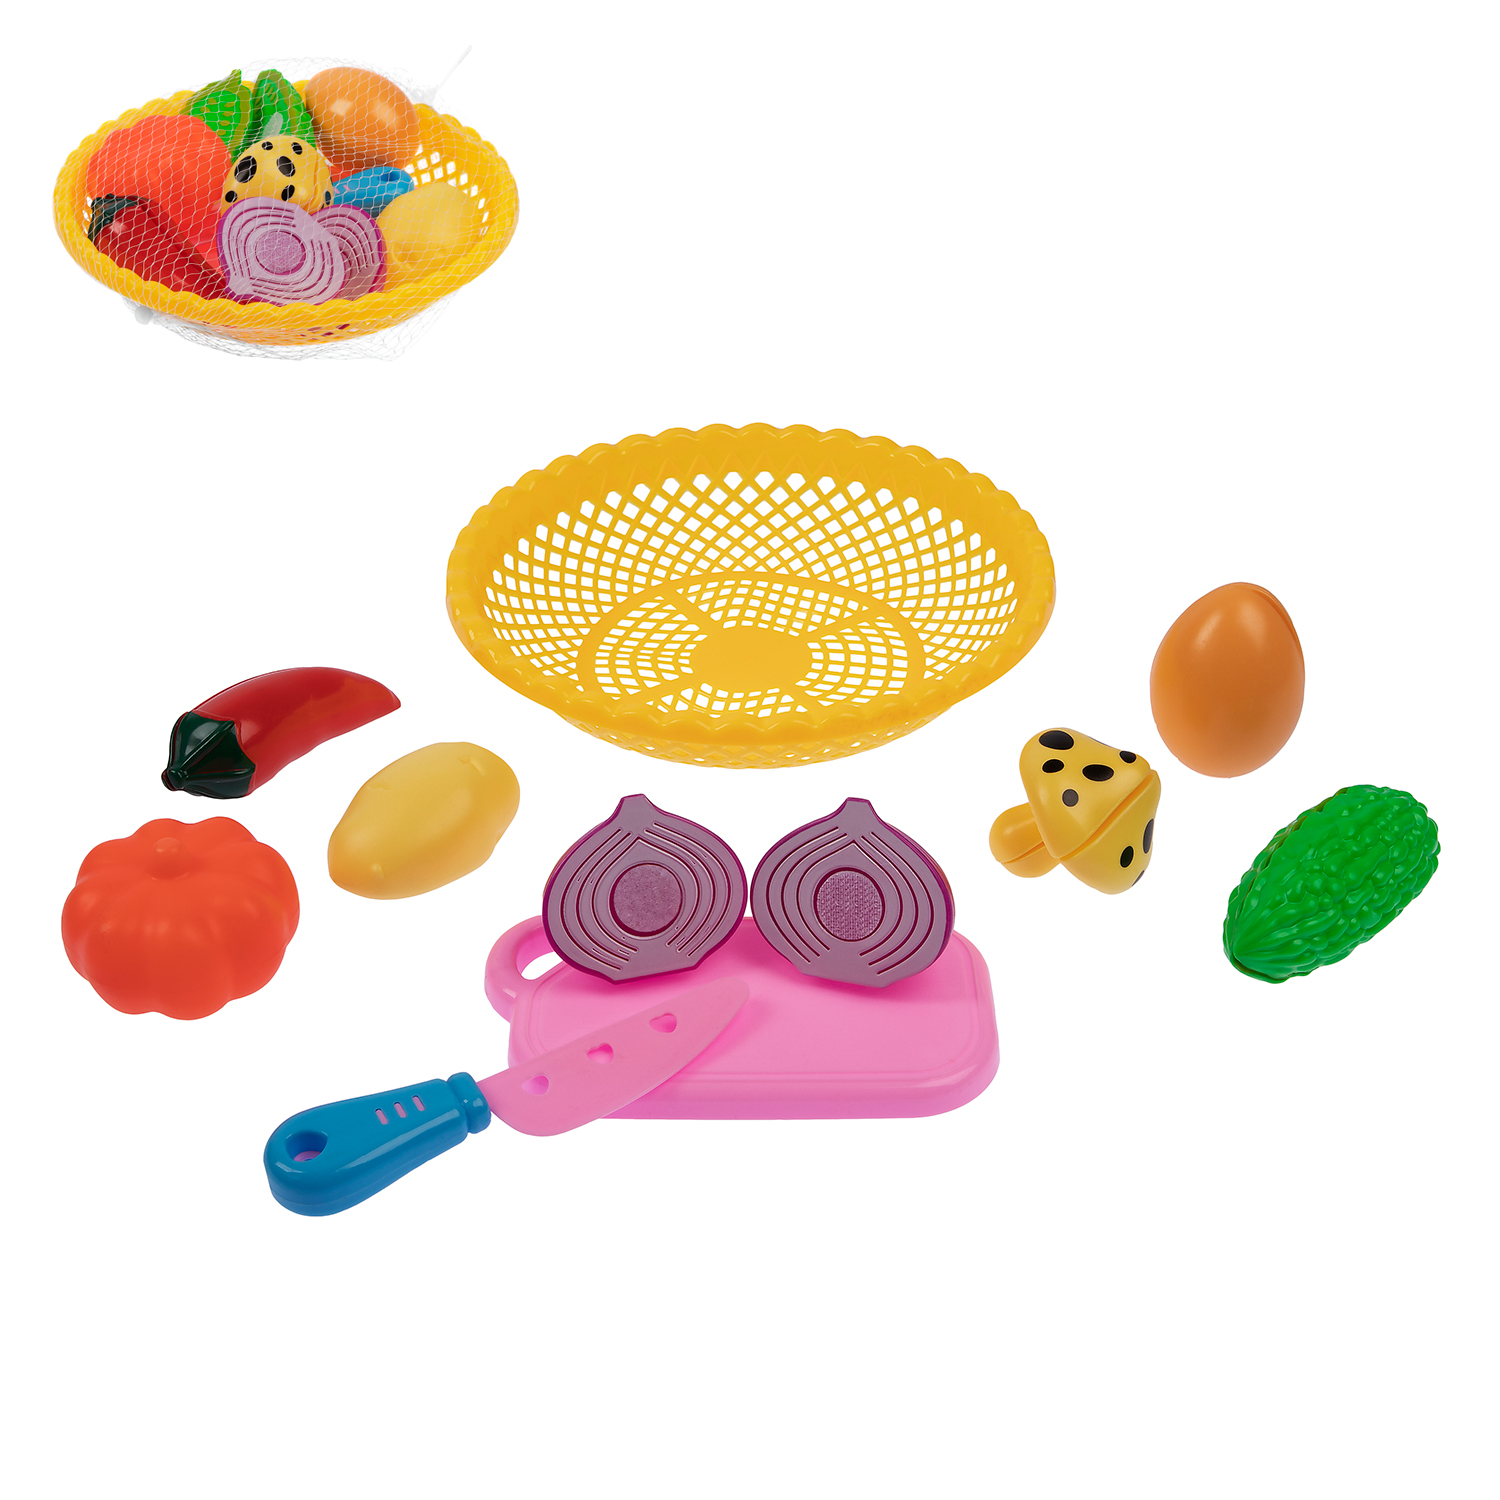 Набор посуды и продуктов Amore Bello в сетке  JB0211417